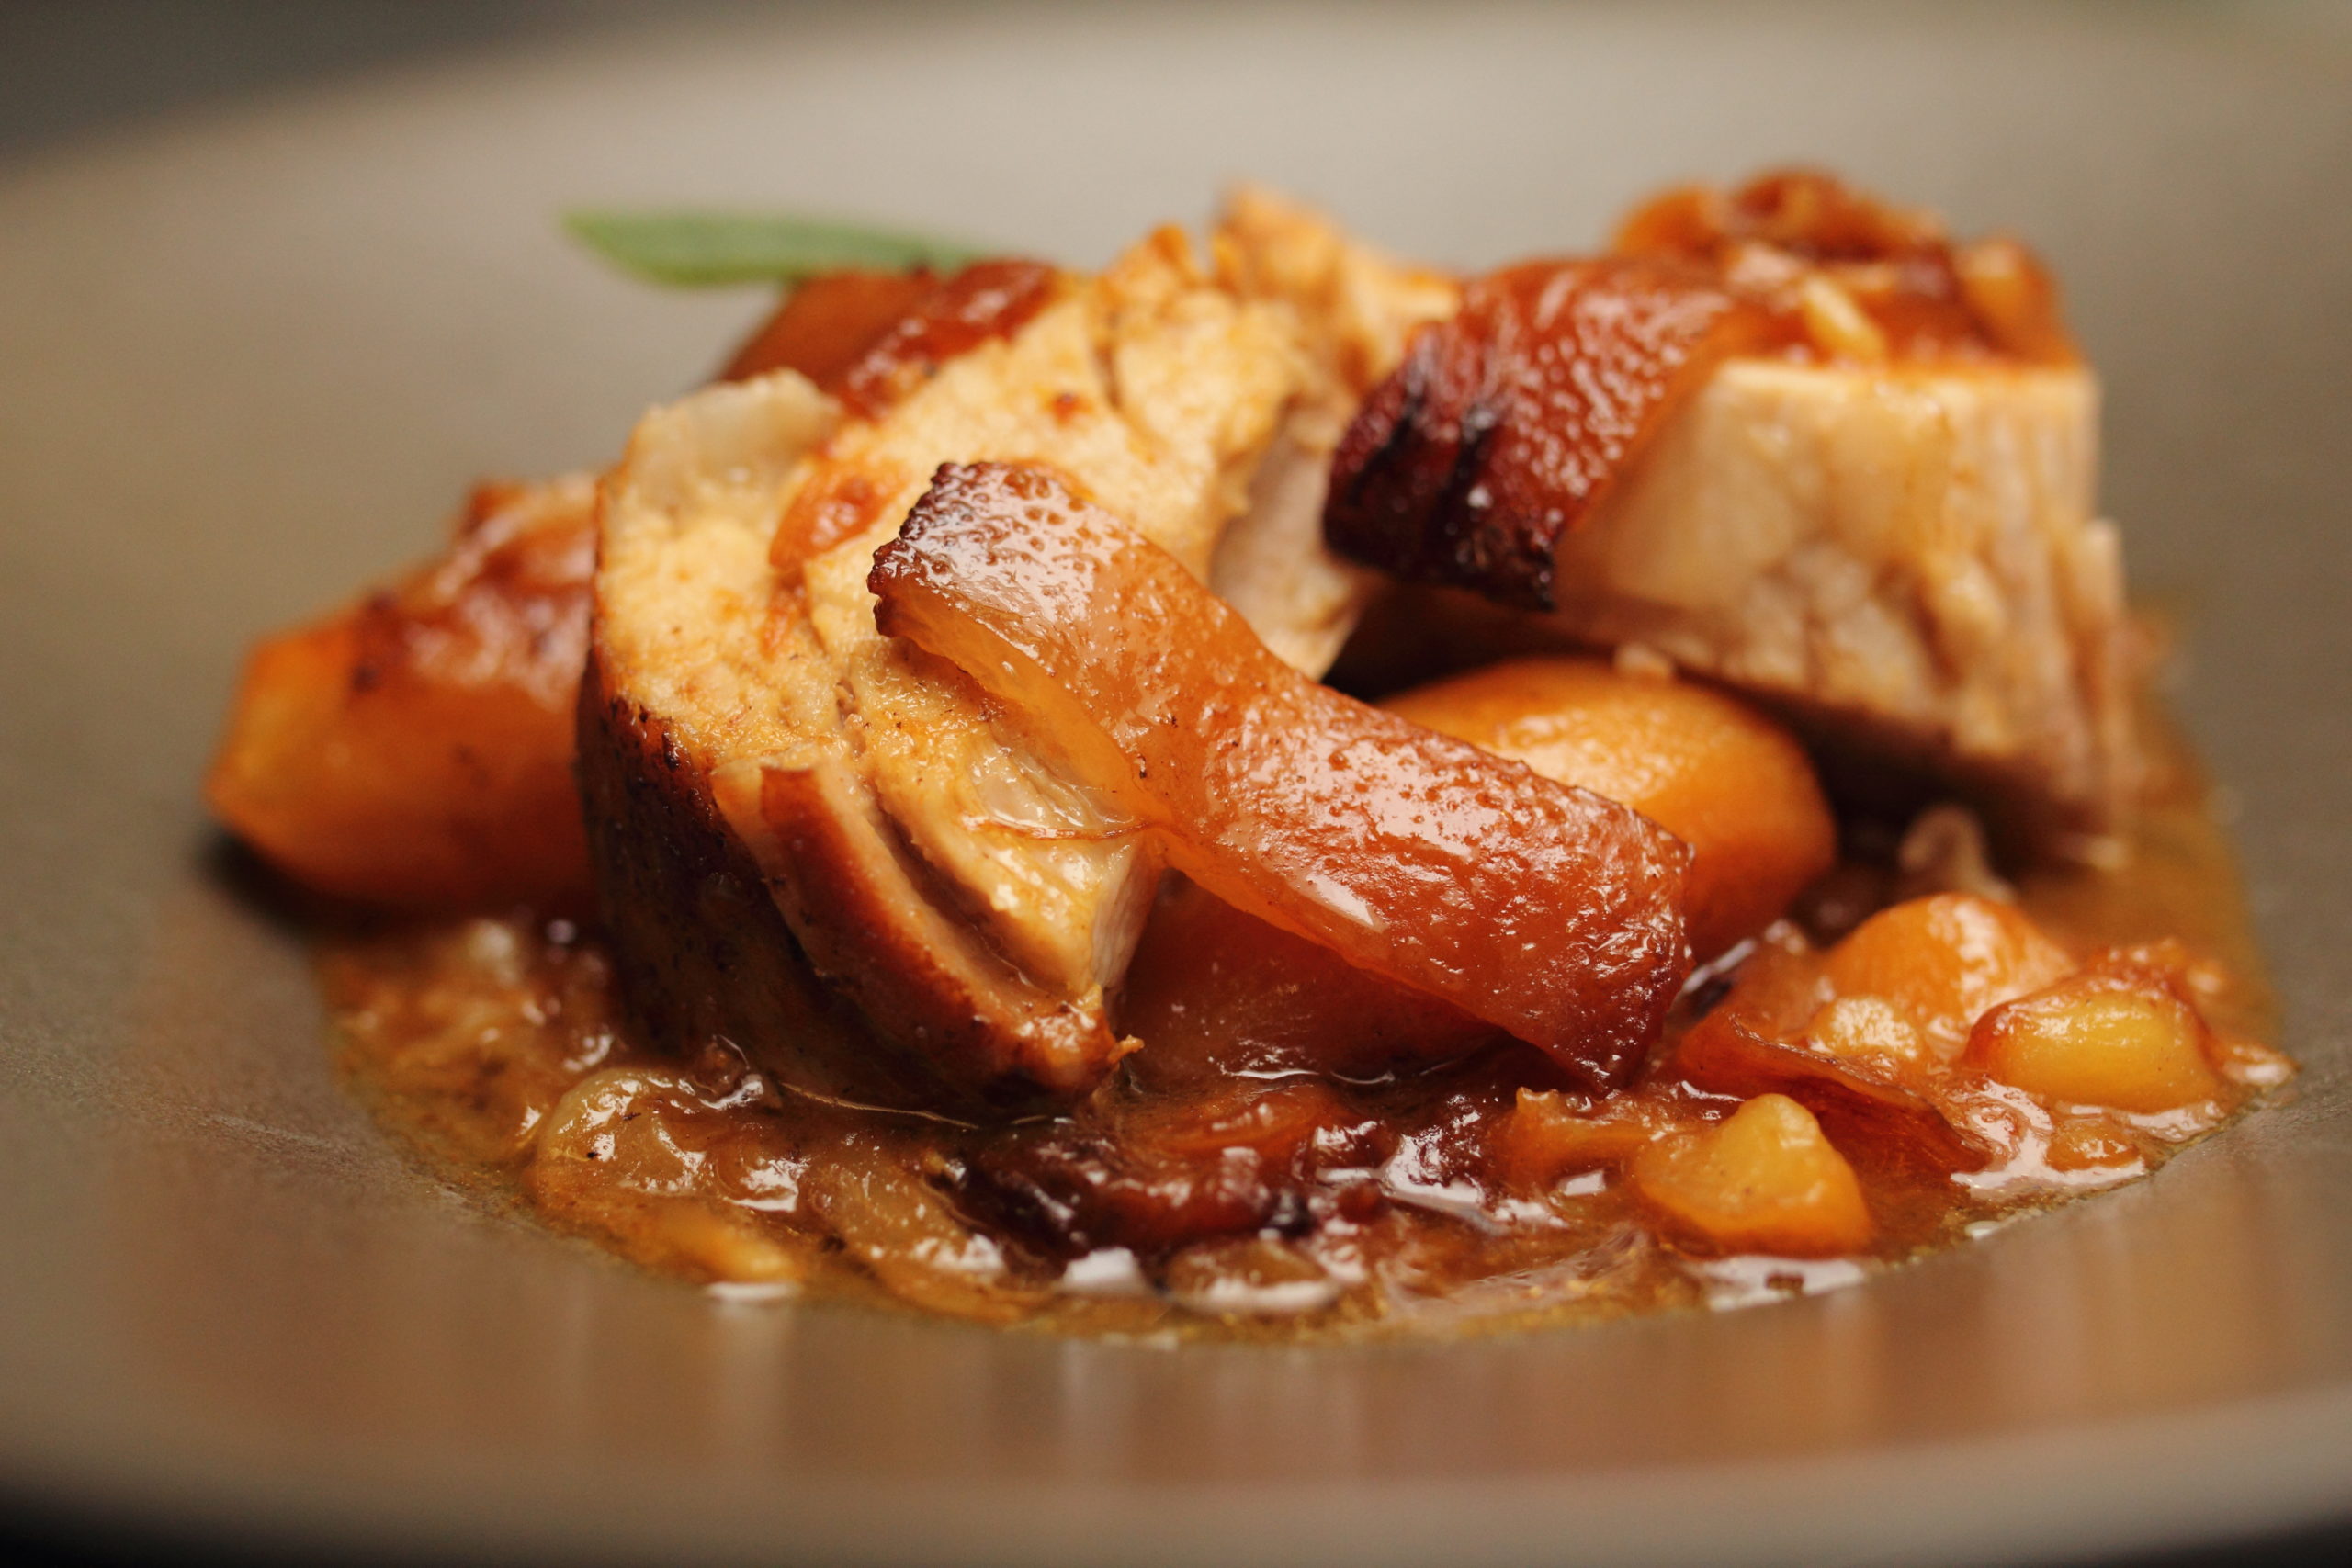 La Caghuse picarde avec ses pommes de terre Pompadour, la recette que vous propose Éric Boutté. (ÉRIC BOUTTÉ)